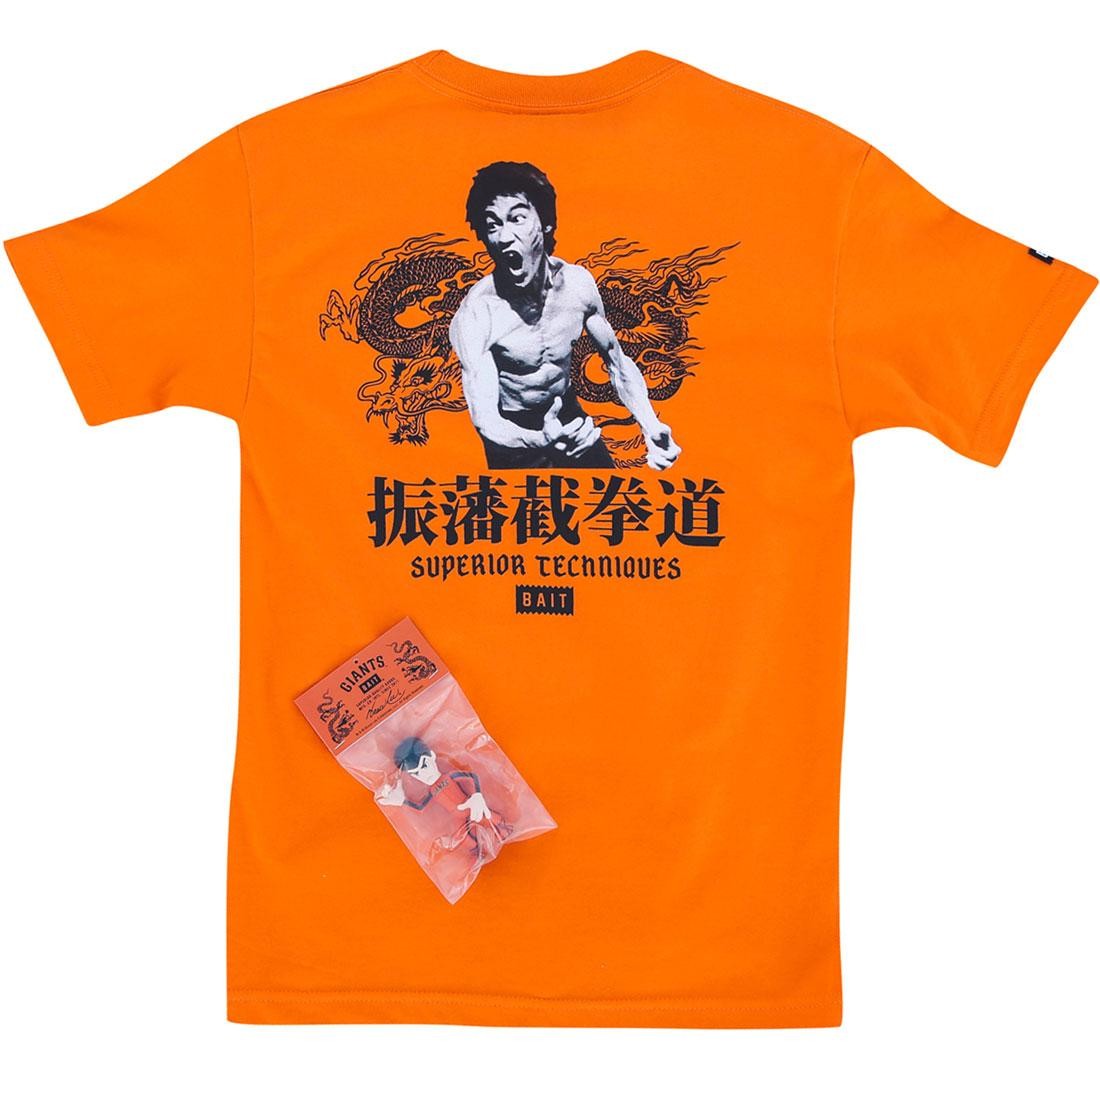 BAIT x San Francisco Giants x Bruce Lee Bundle - Superior Techniques Tee (orange / black)